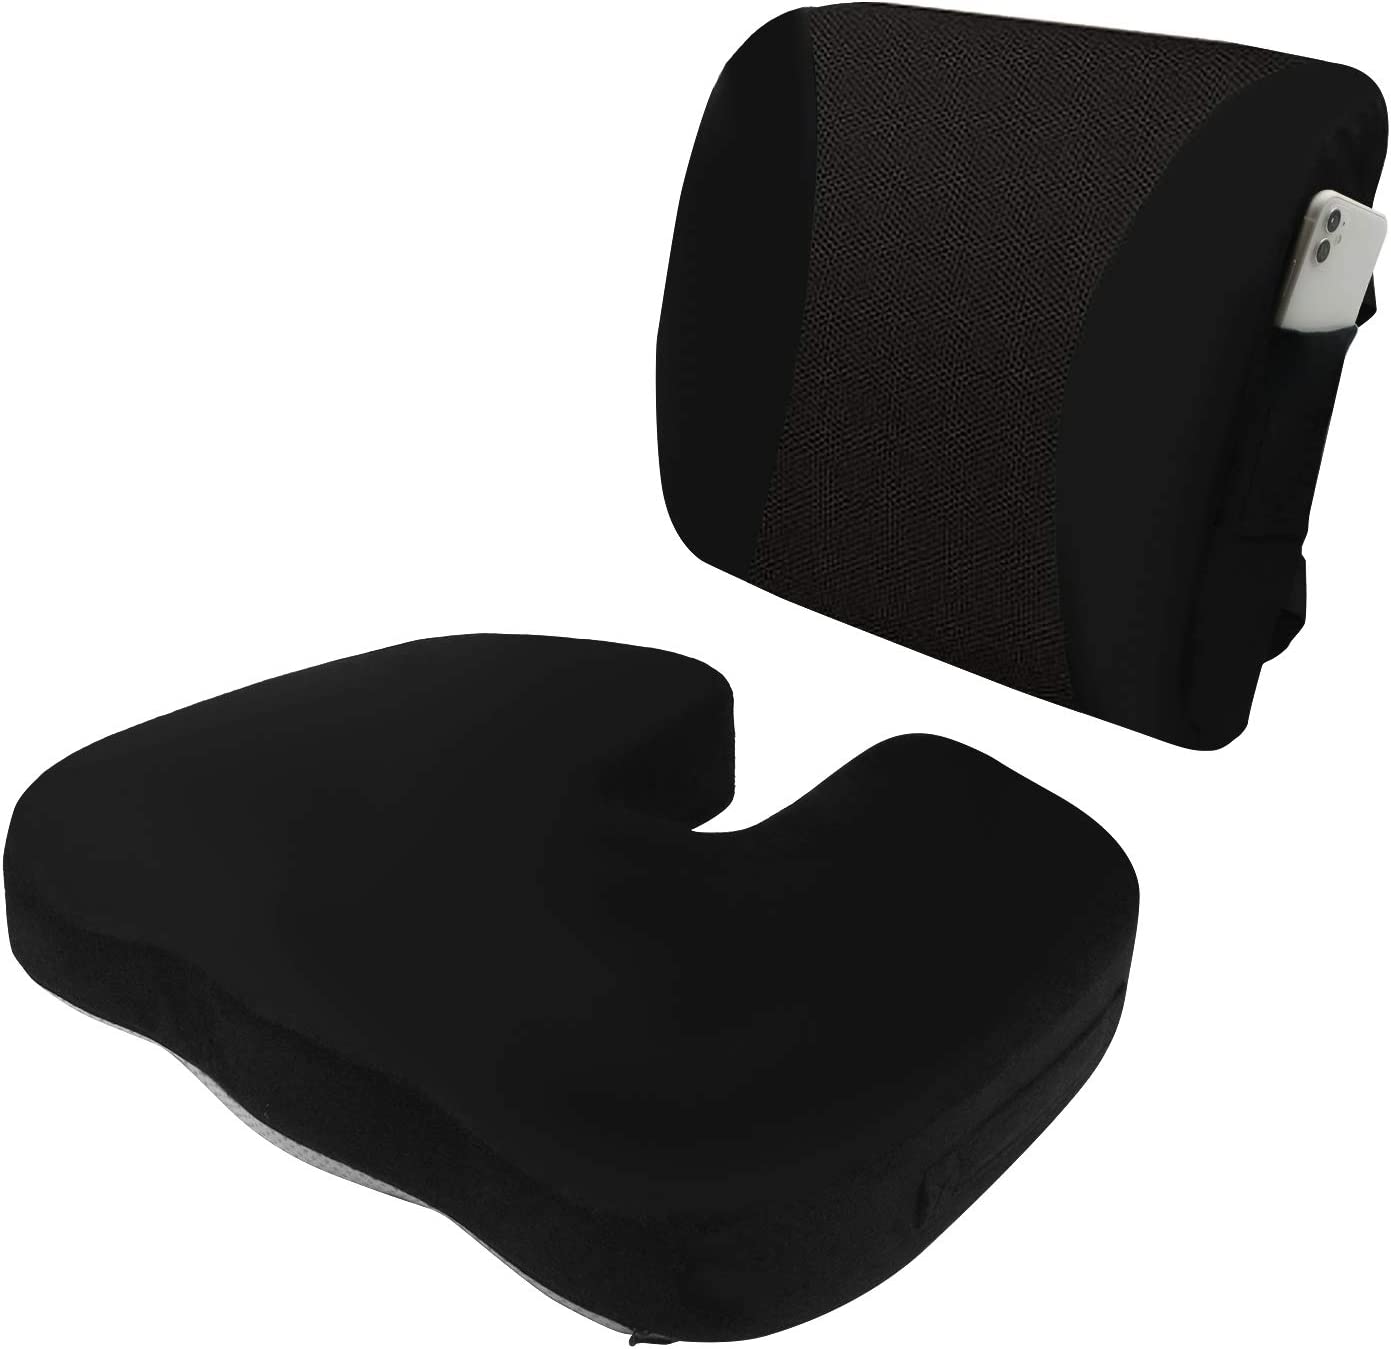  3. HST Memory Foam Seat Cushions & Lumbar 